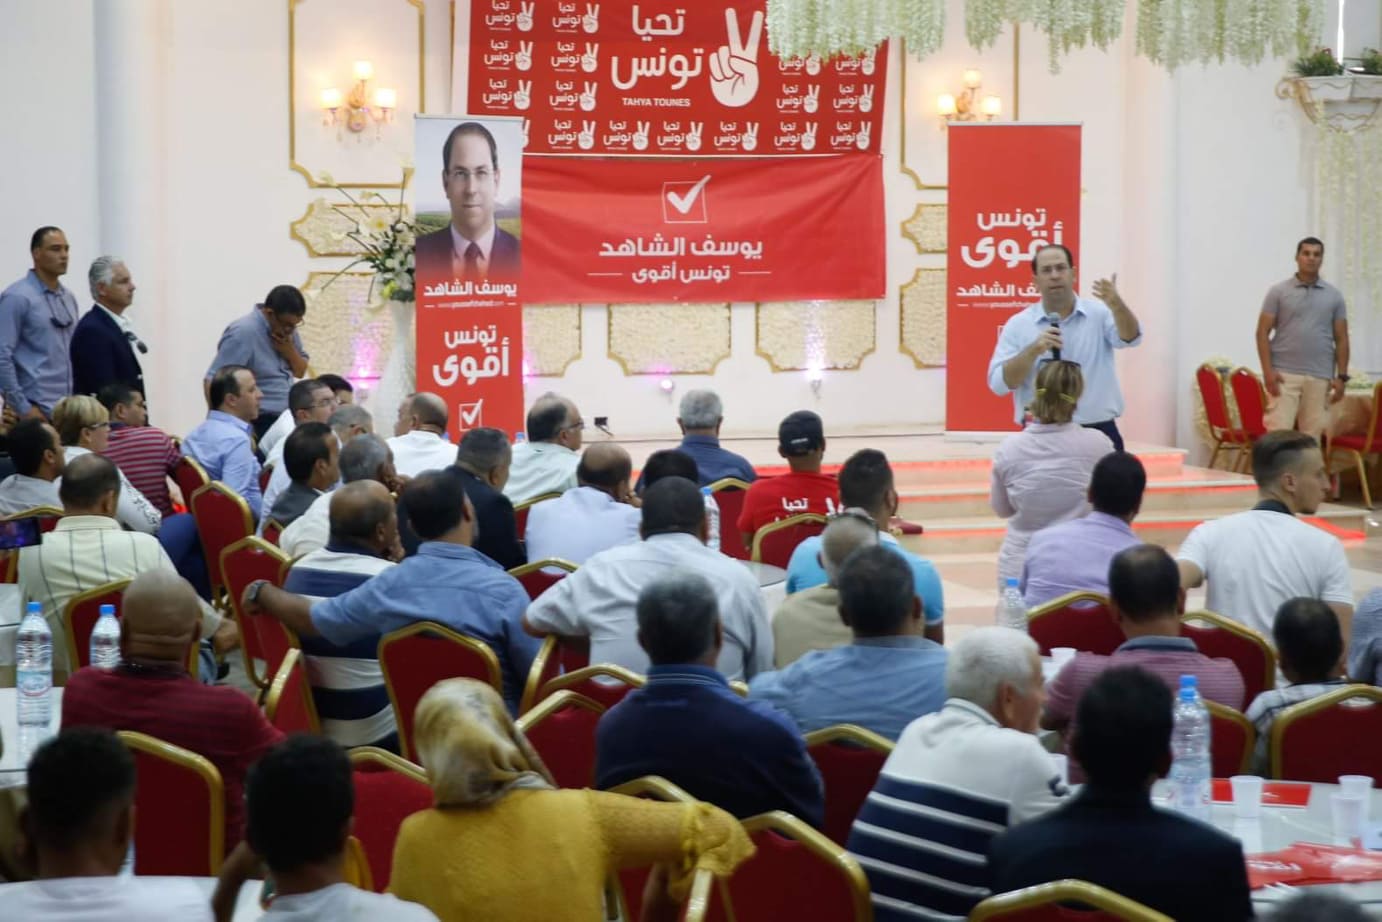 Tunisie- Youssef Chahed accueilli et soutenu par des personnalités nationales à Kairouan